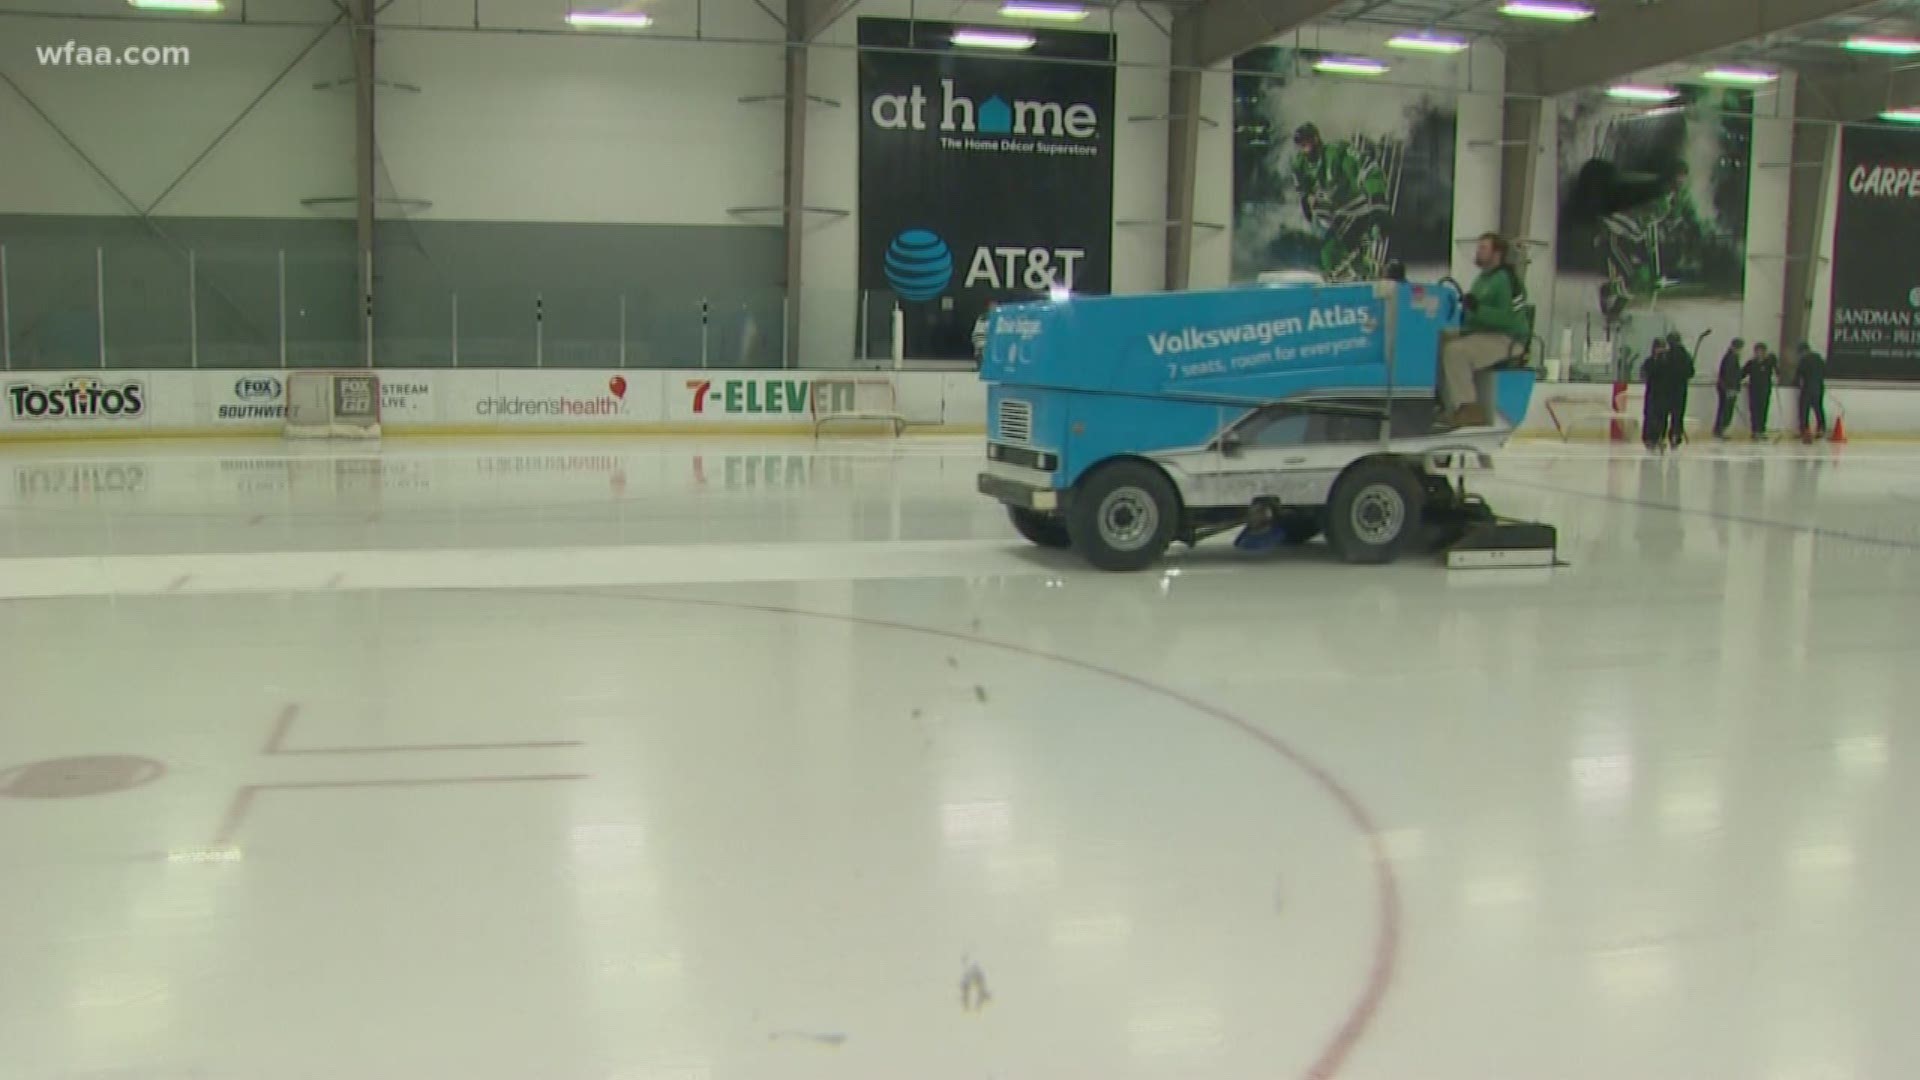 Emergency Goalie David Ayres Helps Hurricanes Win in NHL Debut